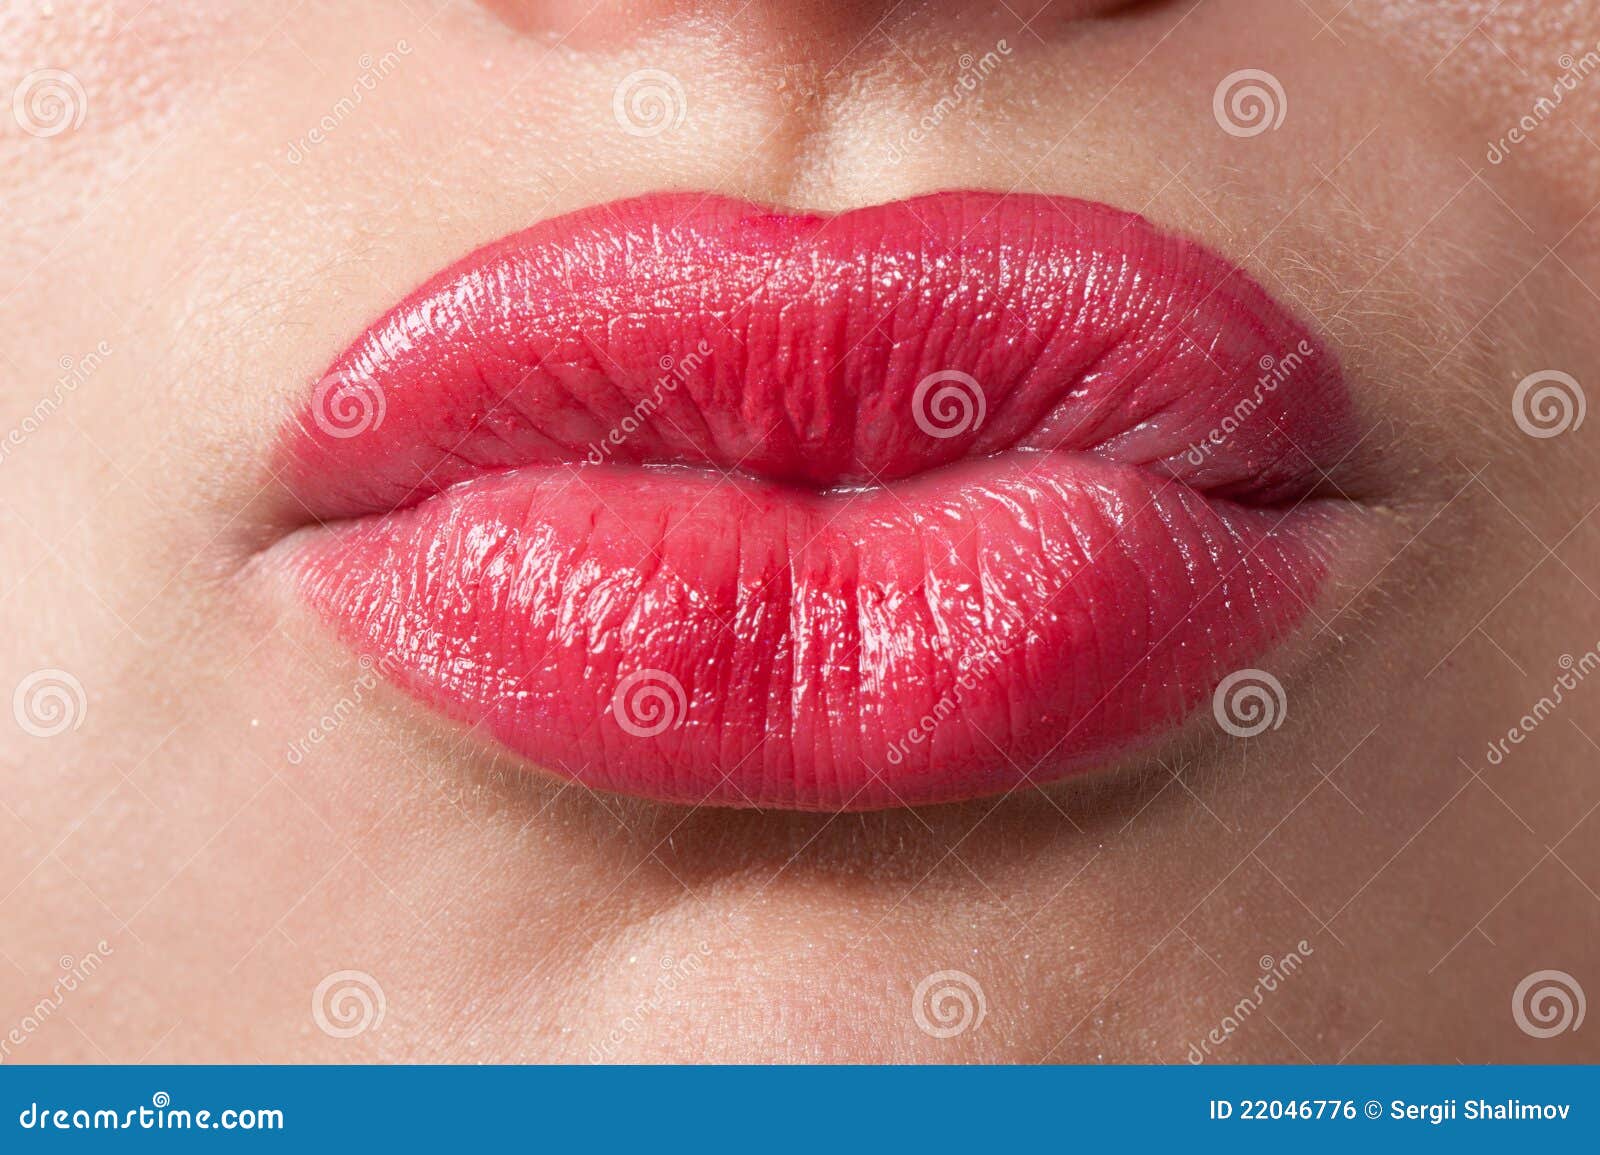 Hot Kiss 2 Royalty Free Stock Image - Image: 22046776